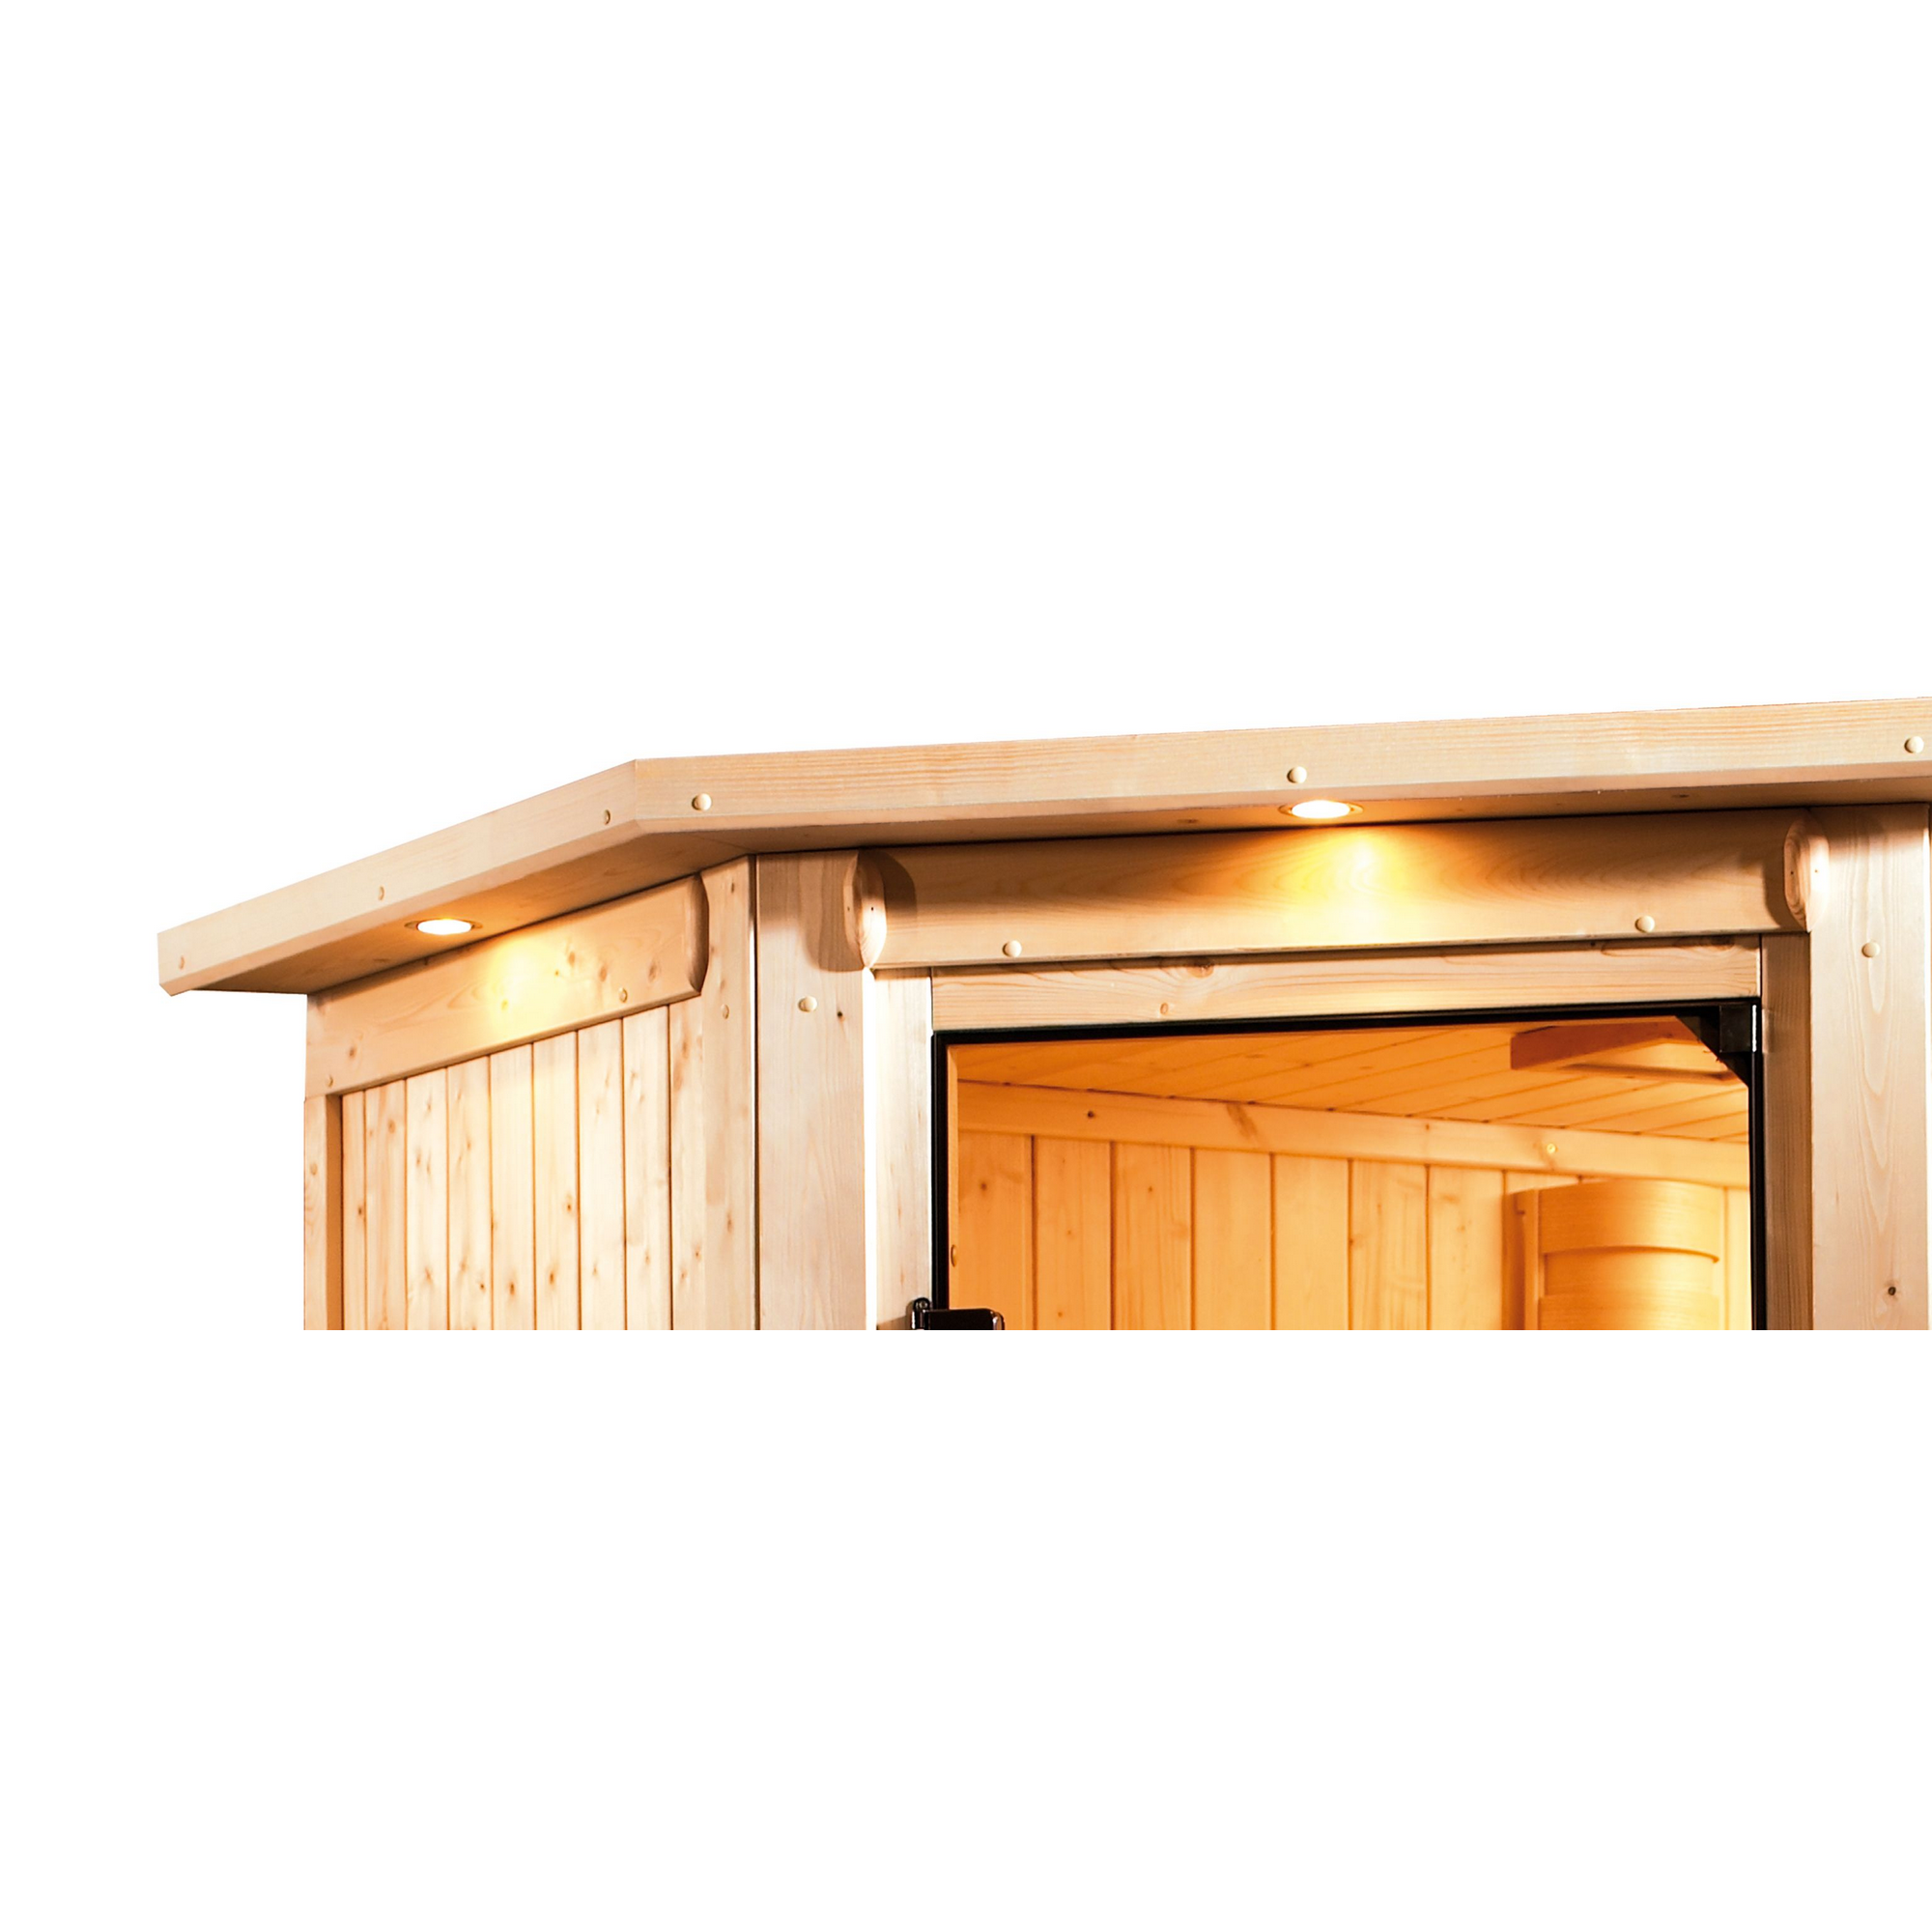 Massivholzsauna 'Ricarda' naturbelassen mit Kranz und bronzierter Tür 9 kW Ofen integrierte Steuerung 264 x 198 x 212 cm + product picture